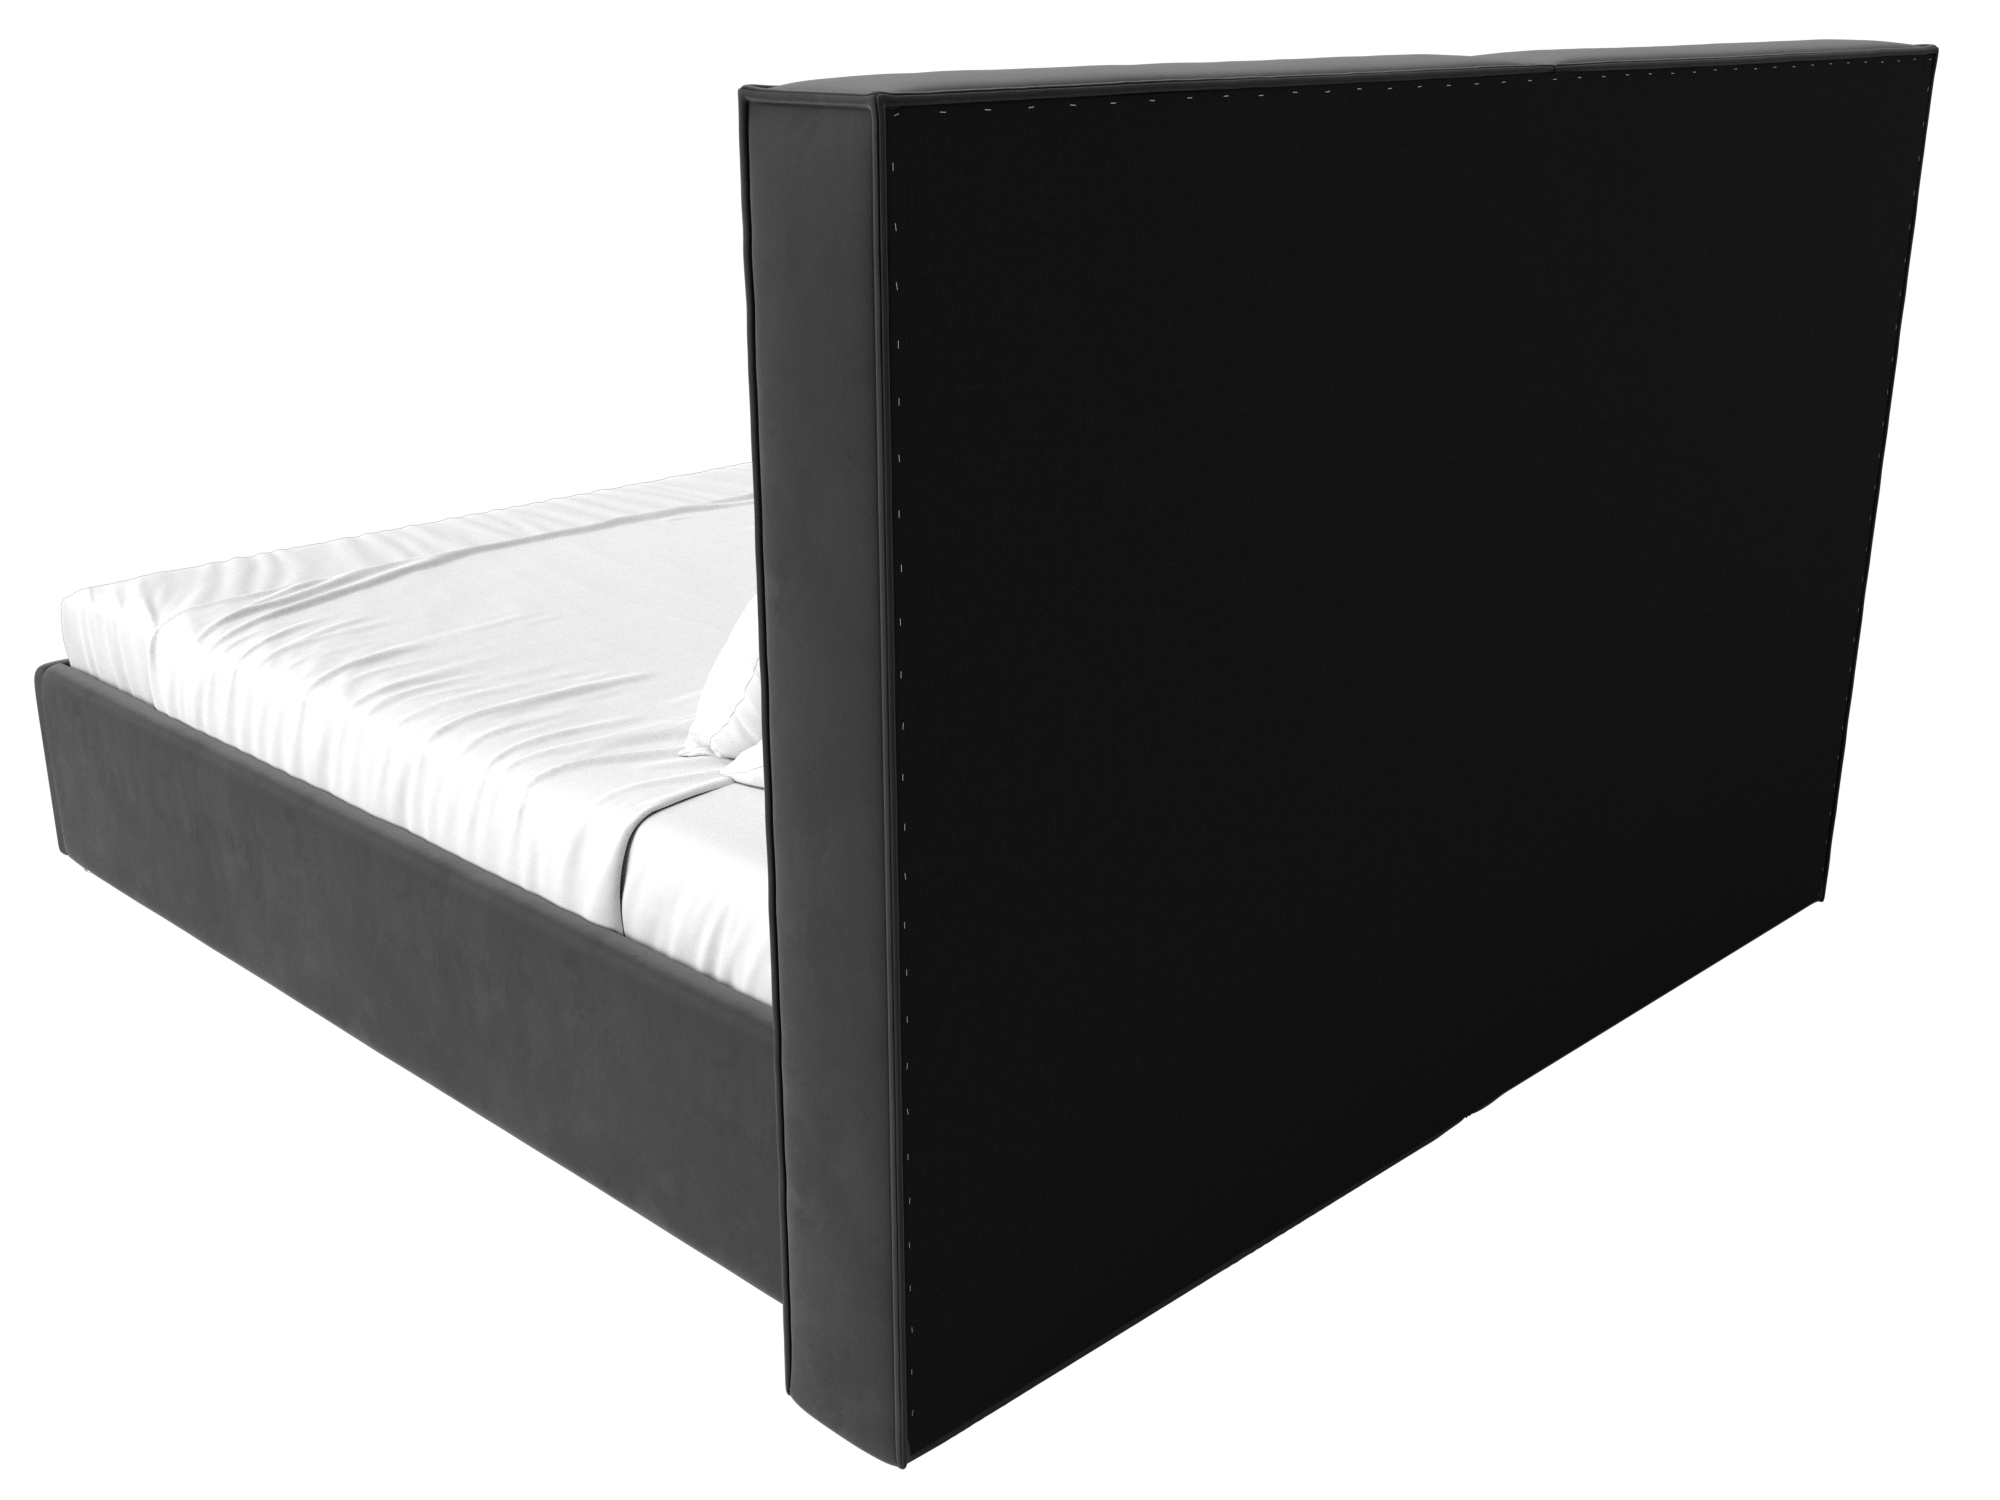 Интерьерная кровать Аура 160 (Серый)